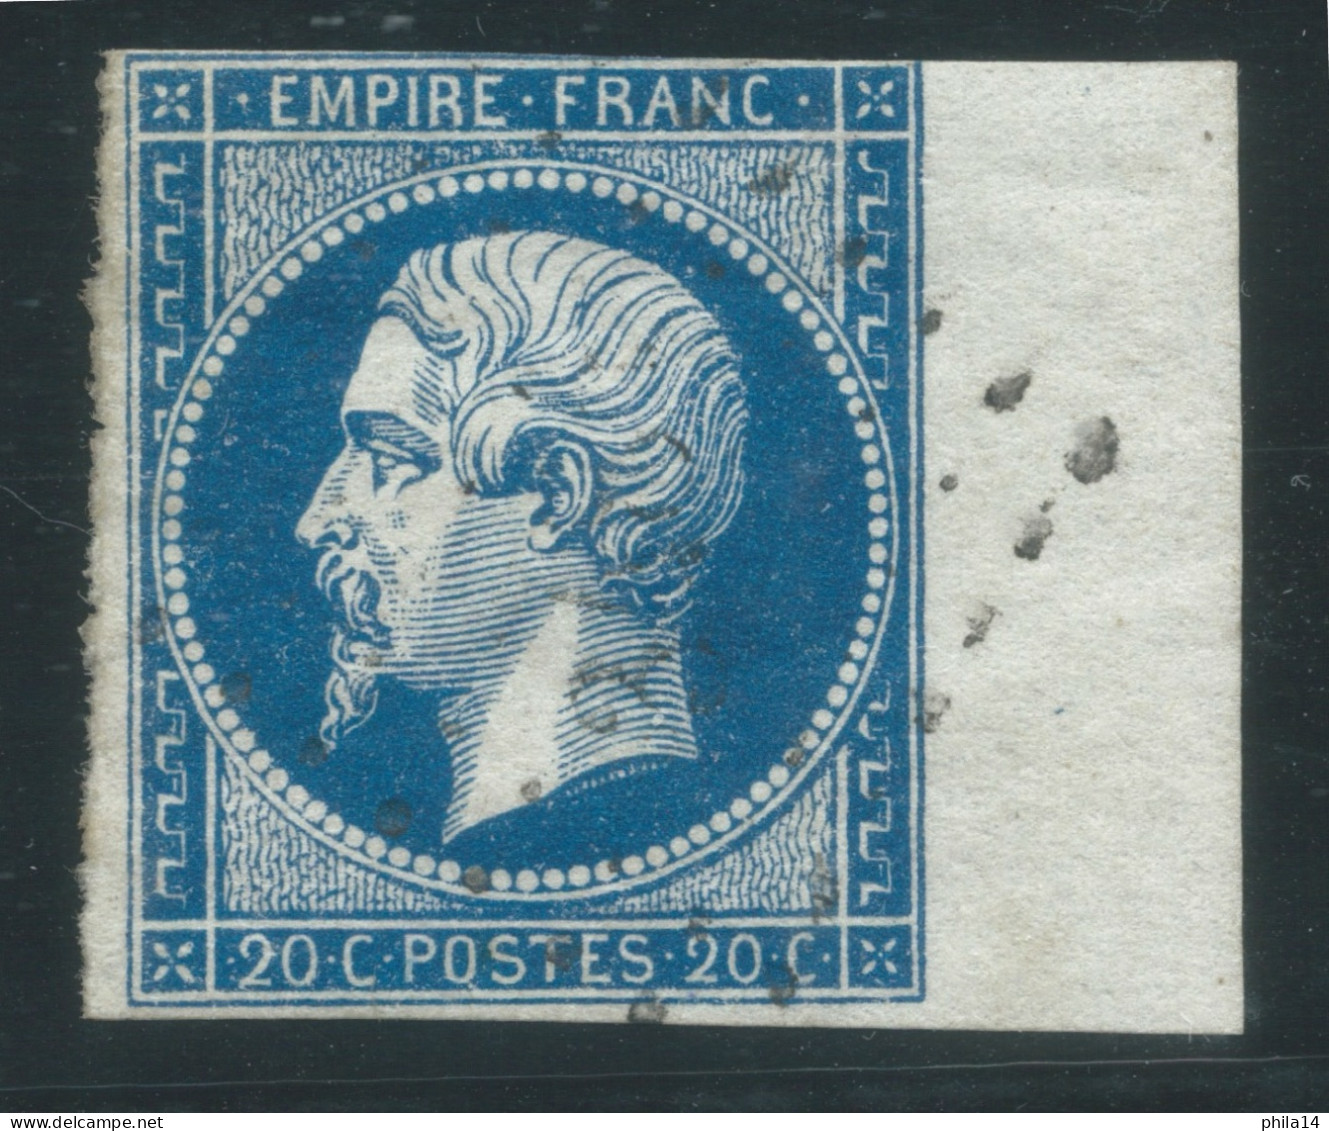 N°14 20c BLEU NAPOLEON TYPE 1 / BORD DE FEUILLE - 1853-1860 Napoléon III.